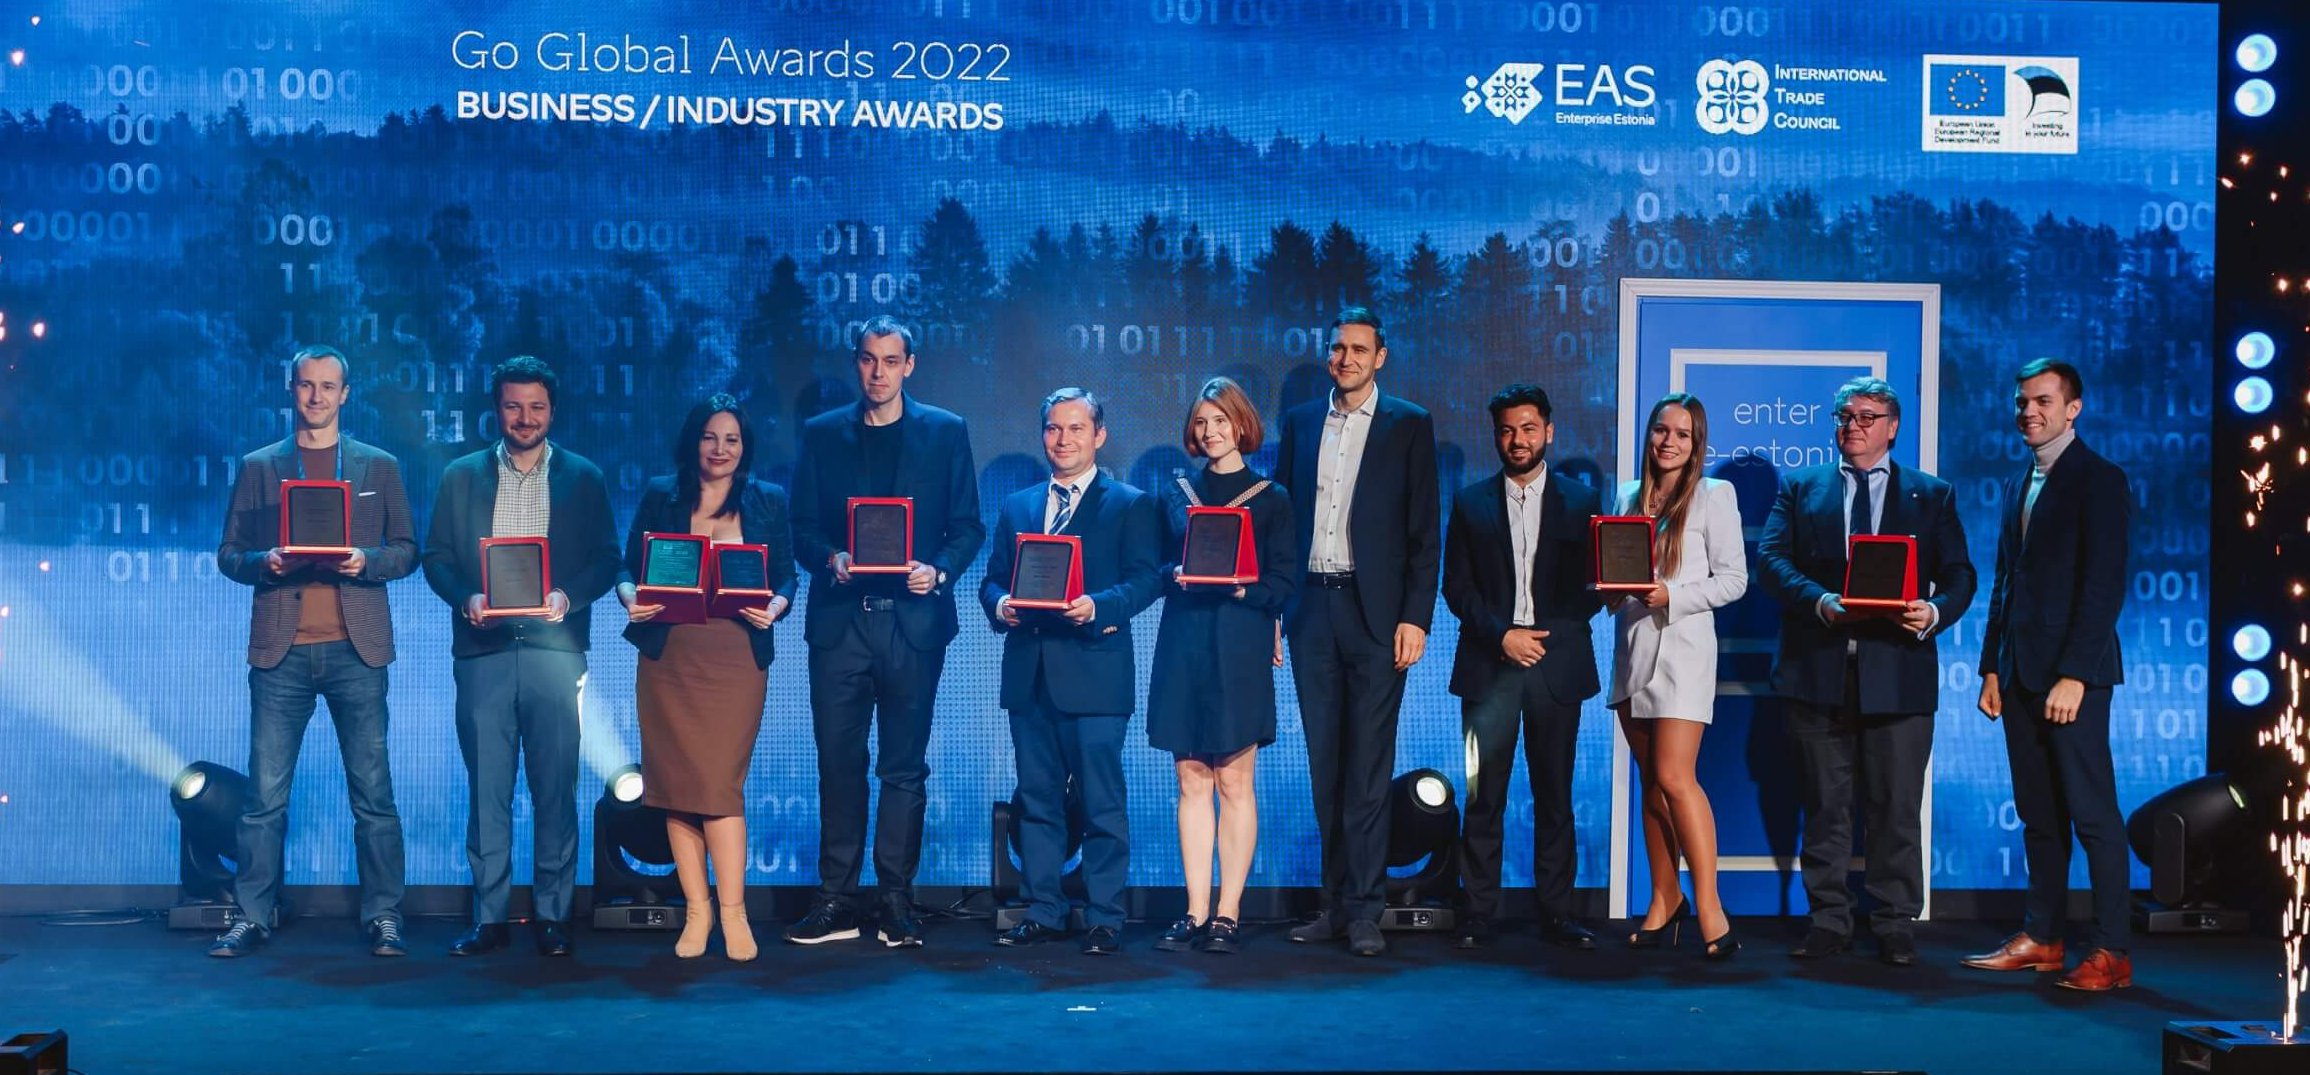 SDK.finance получает награду Whitelabel FinTech года на церемонии вручения наград Go Global Awards 2022